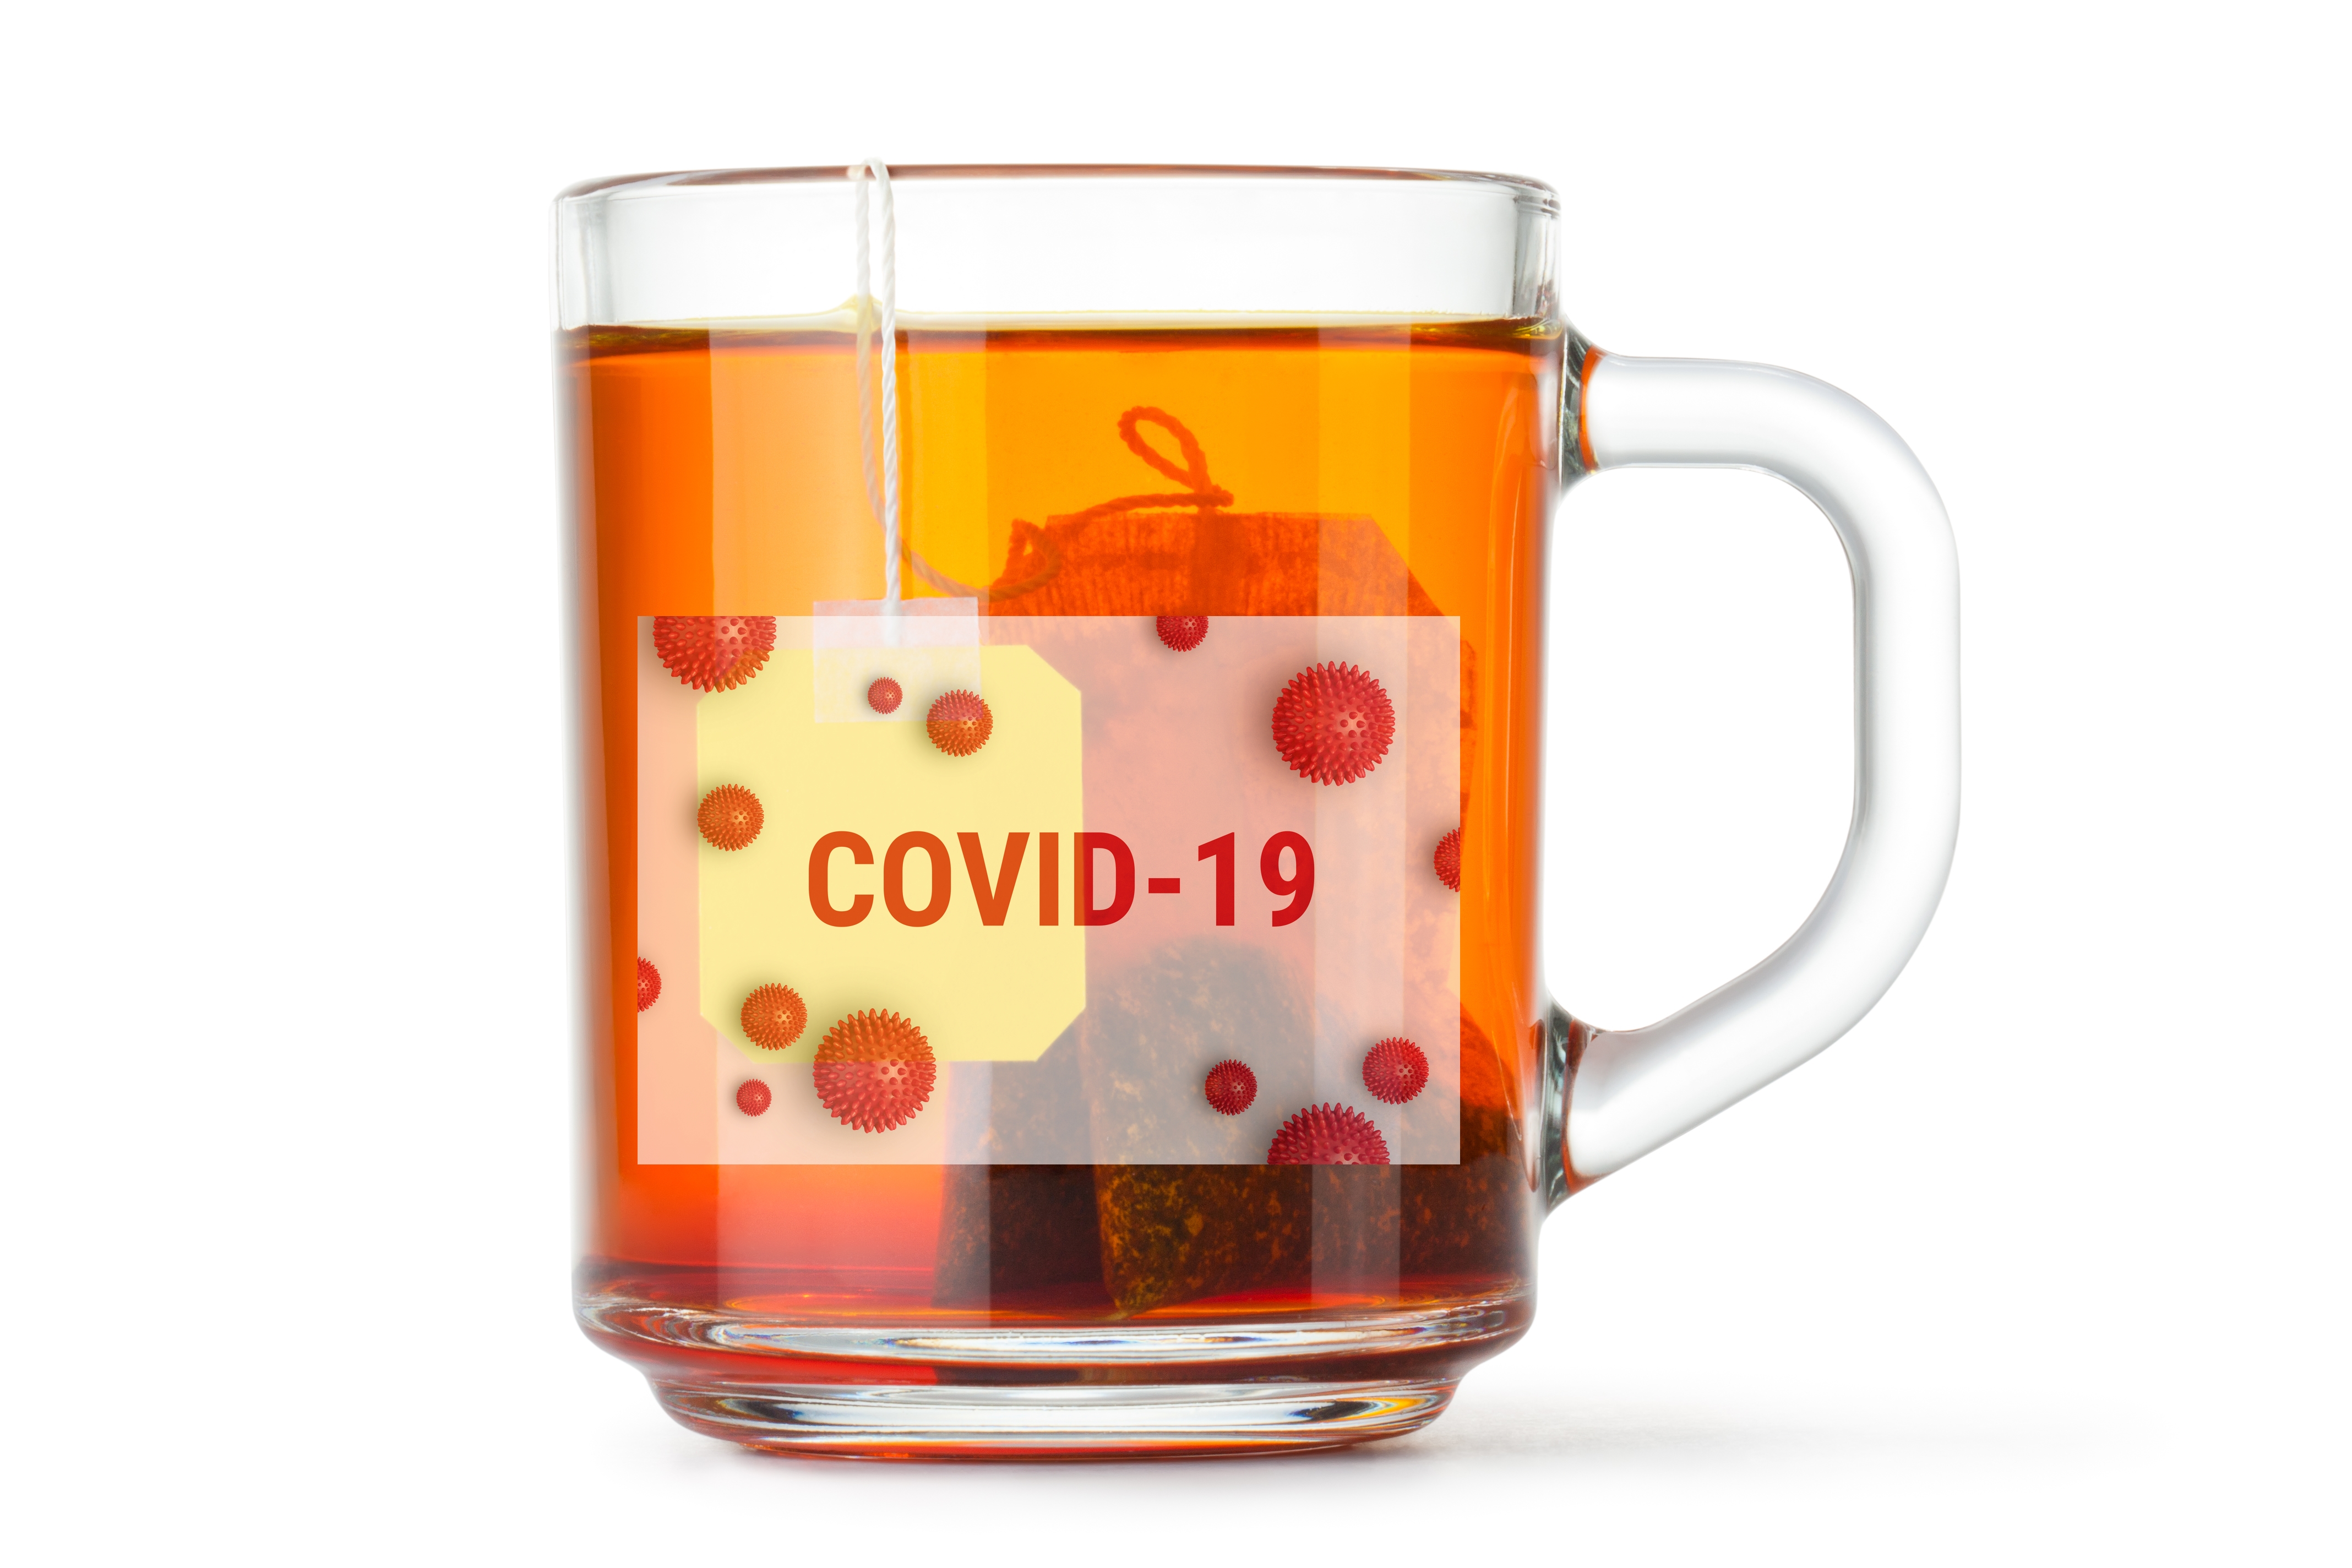 Studiu: O ceașcă de ceai ajută la eliberarea stresului provocat de pandemia de Covid